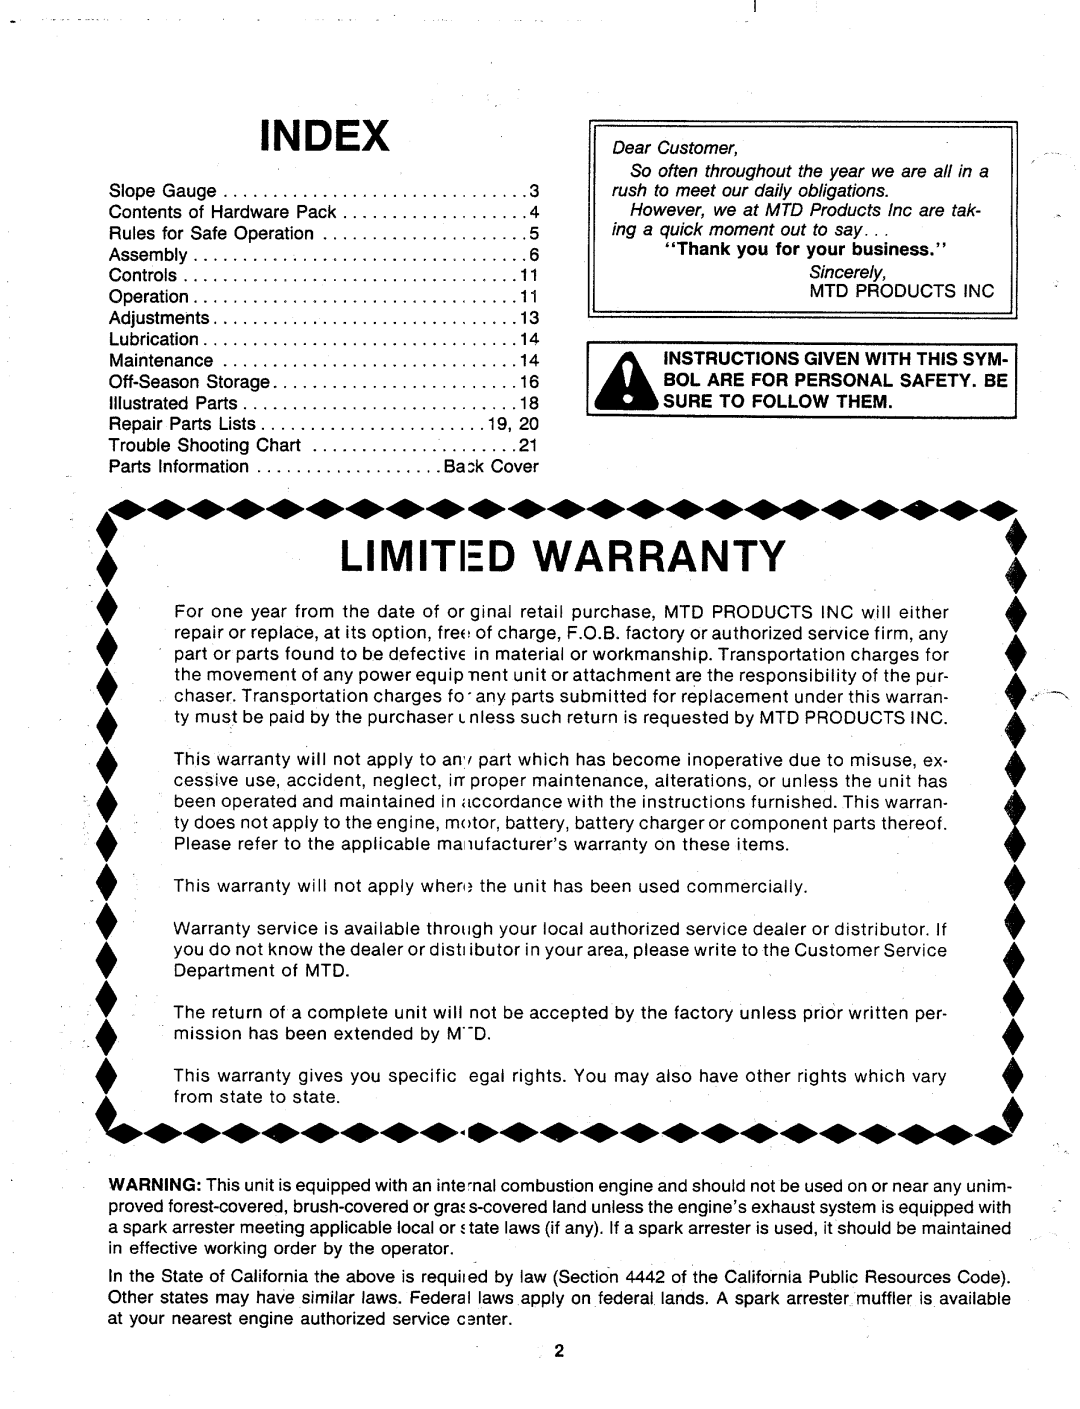 MTD 117-104-000 manual 